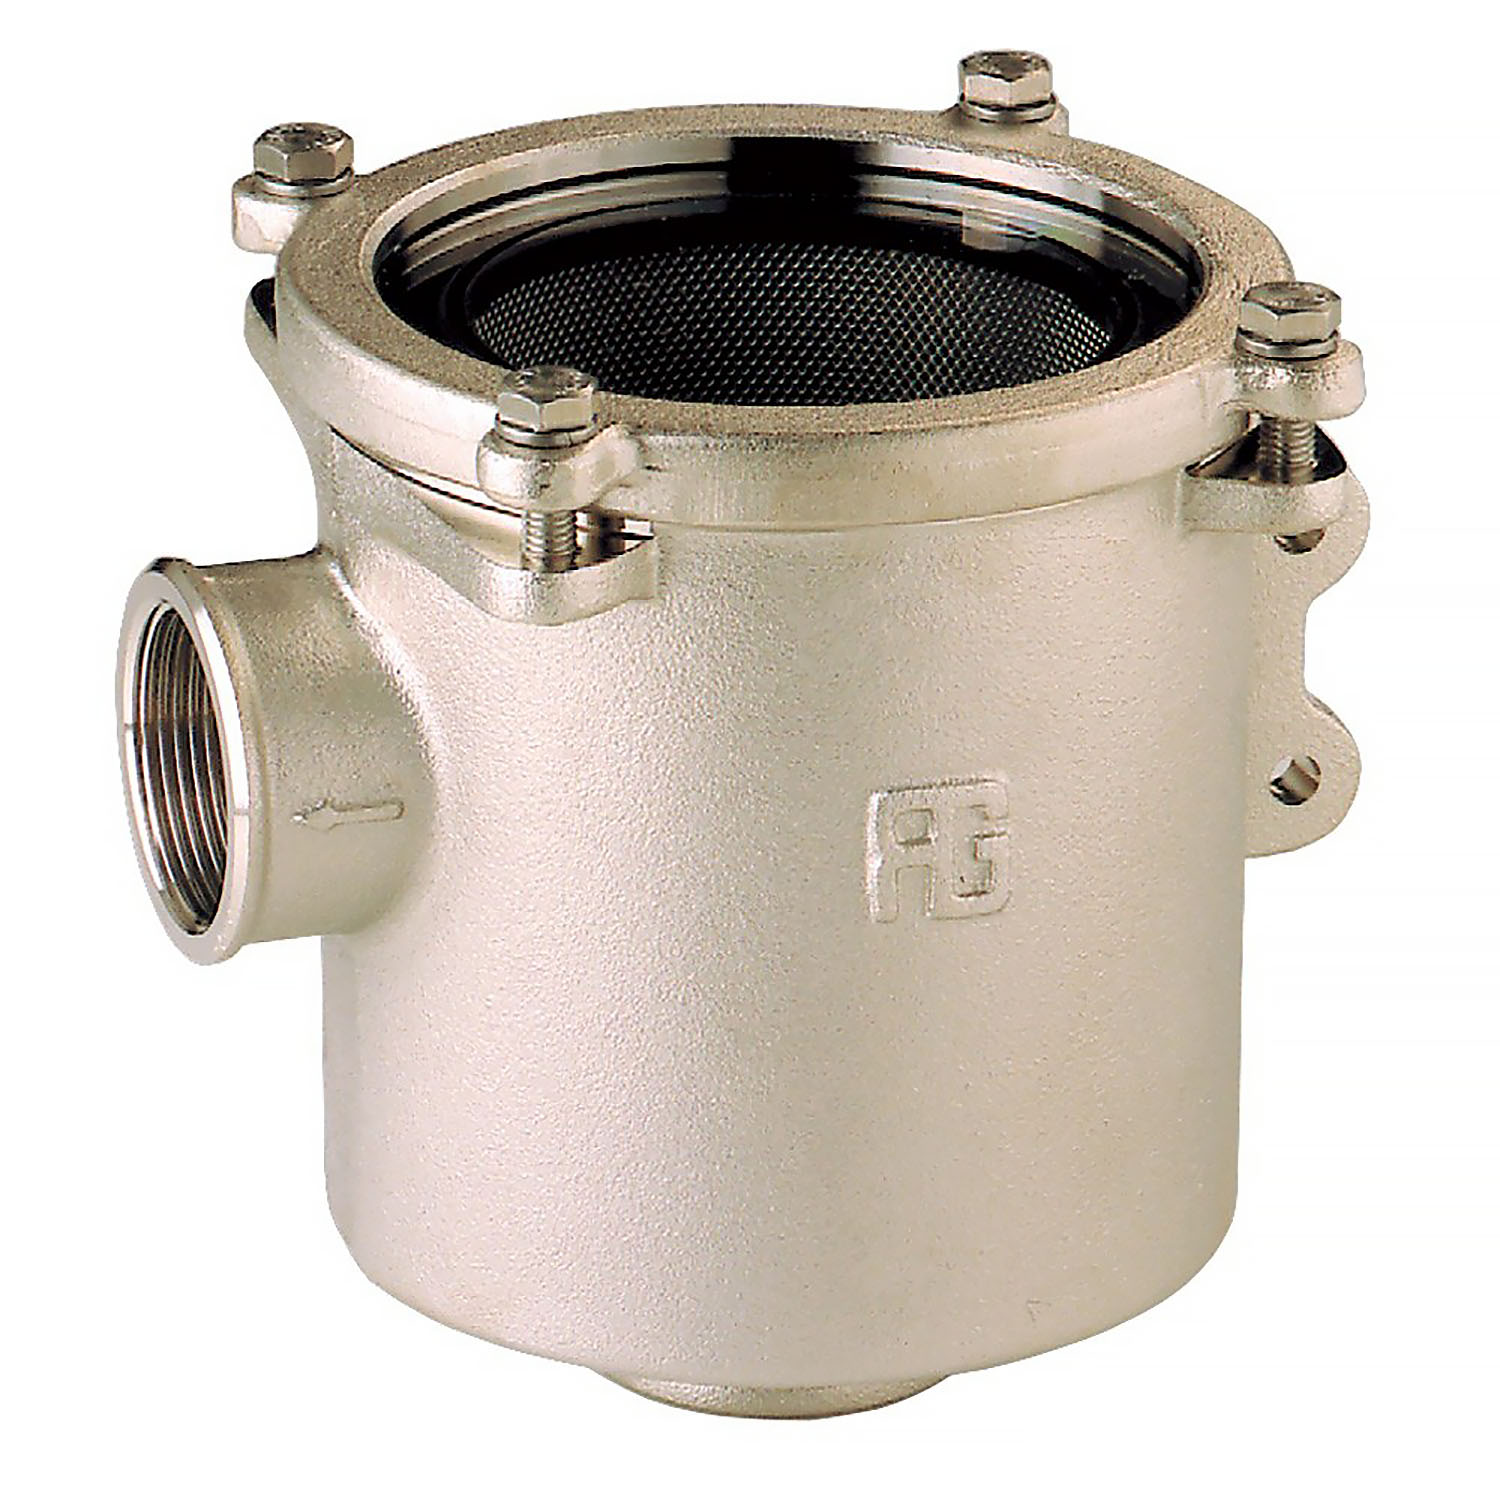 Фильтр водяной системы охлаждения двигателя Guidi Marine Ionio 1164 1164#220006 1" 7950-25500л/час из никелированной латуни с крышкой из поликарбоната